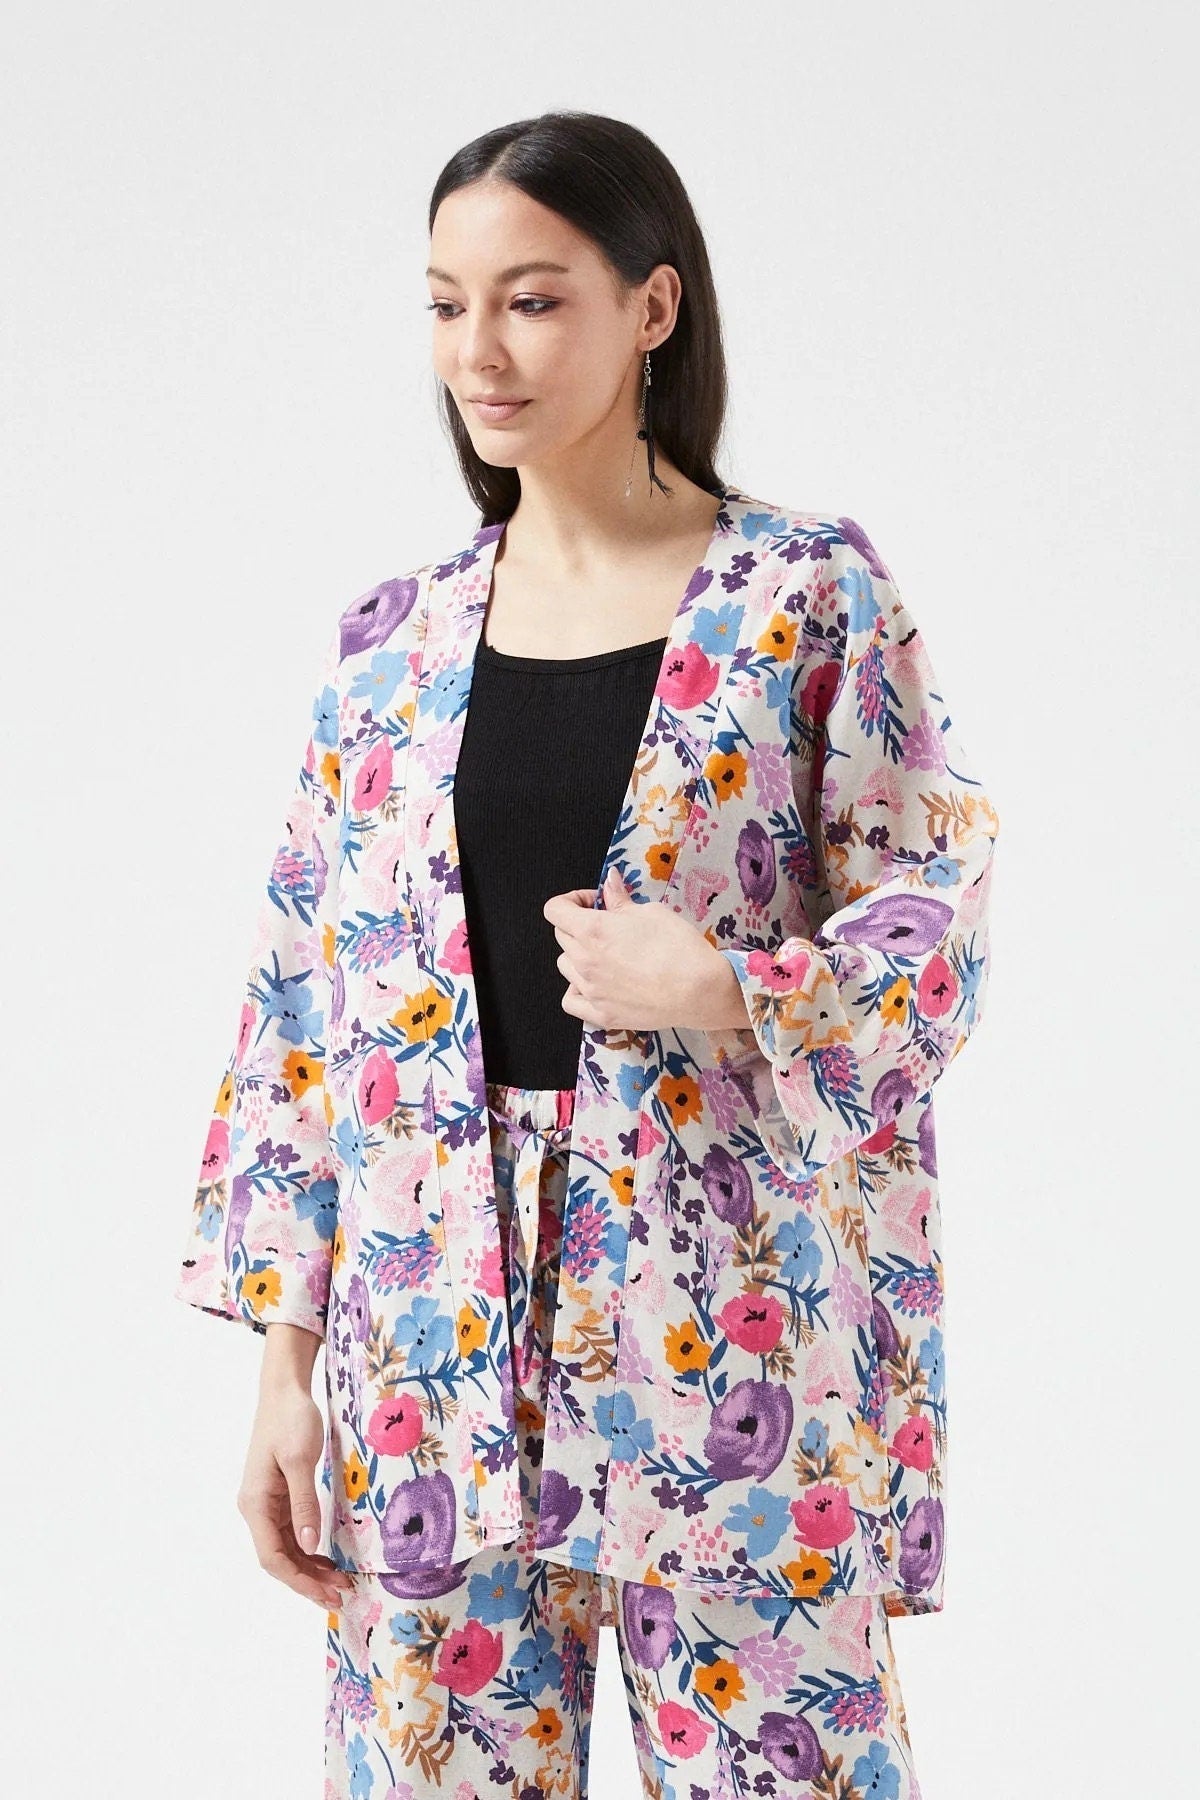 Colorful Floral Print Linen Kimono Swim Cover Up